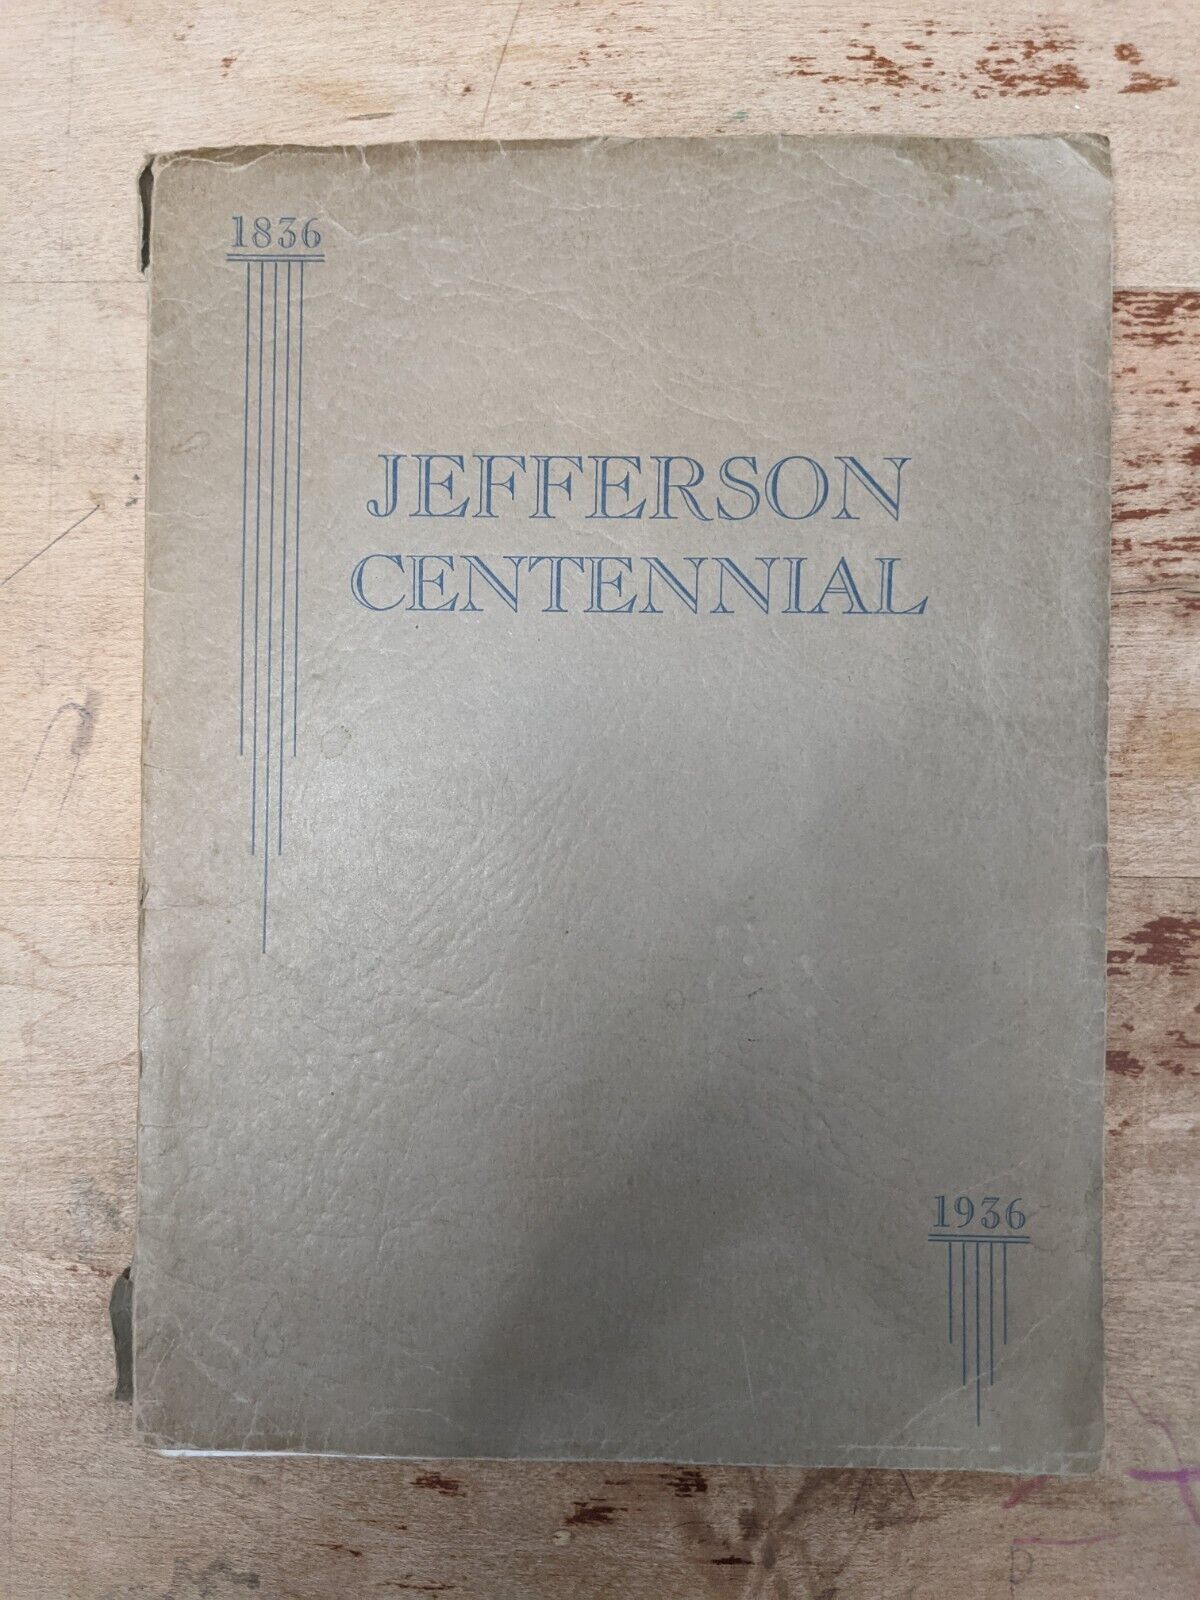 Jefferson Wisconsin Centennial Souvenir Book. 1836-1936. Photos, History 